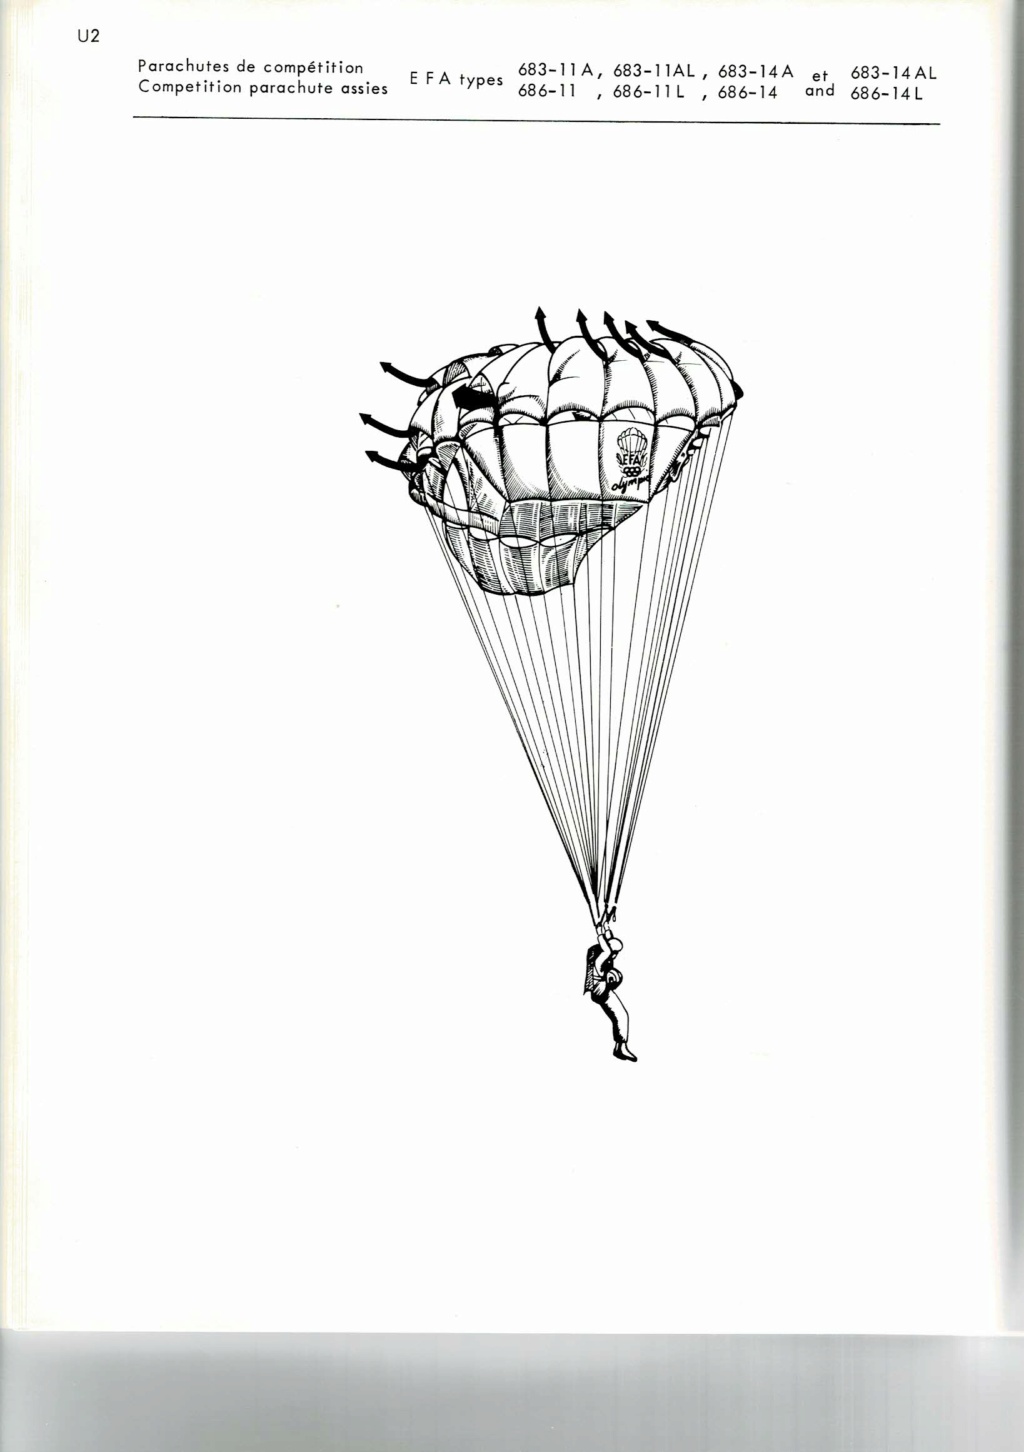 [Parachutes] Fiches Techniques Parachute EFA Type 683 Ccf_0058